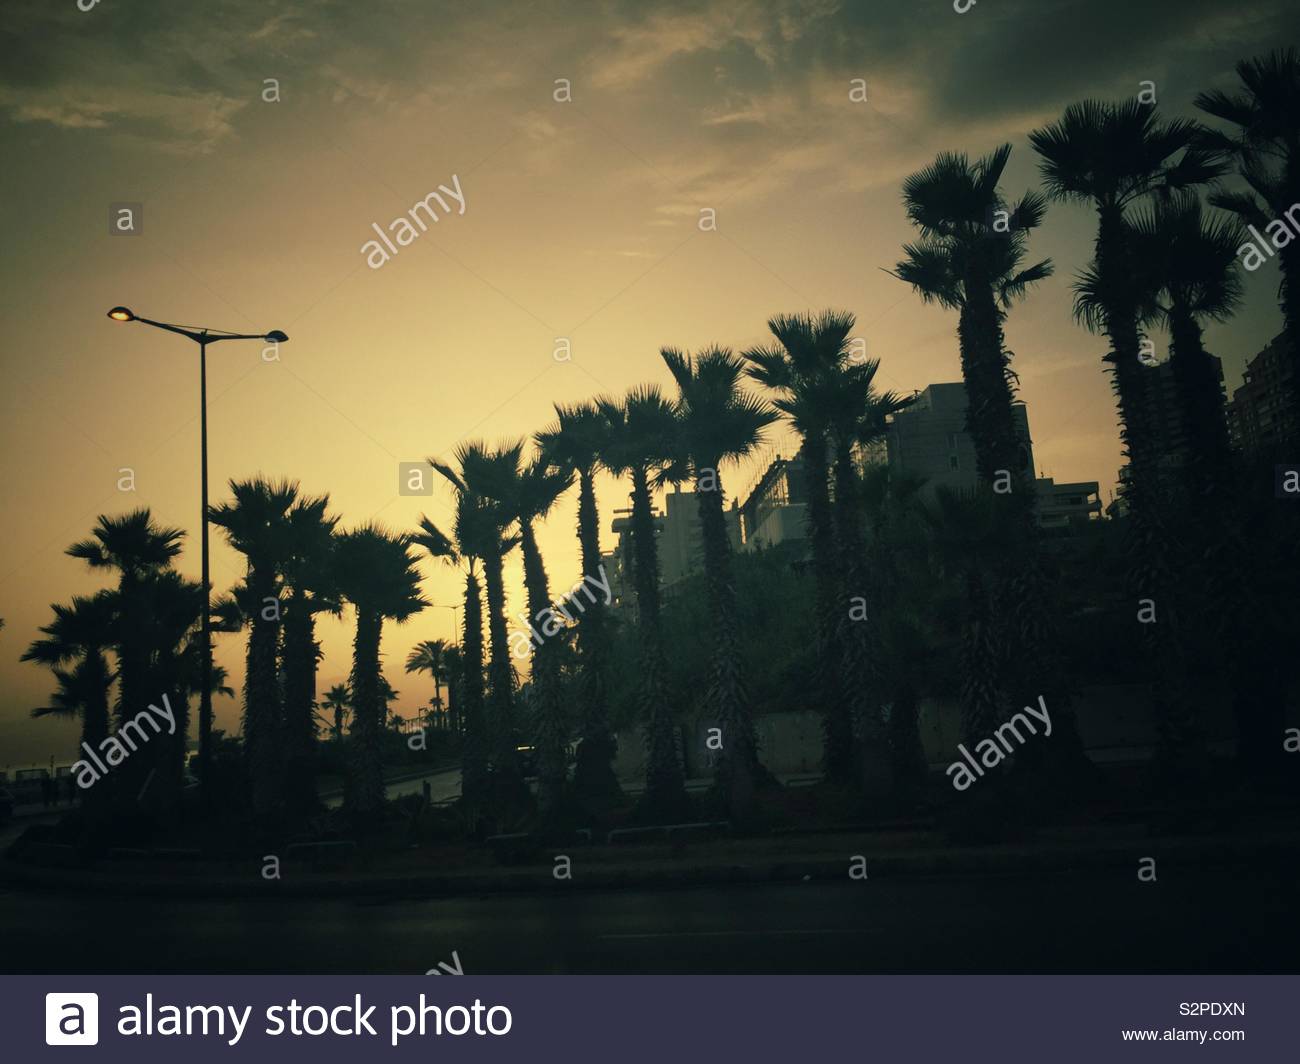 Silhouettes de palmiers au lever de Beyrouth Liban Moyen Orient Banque D'Images